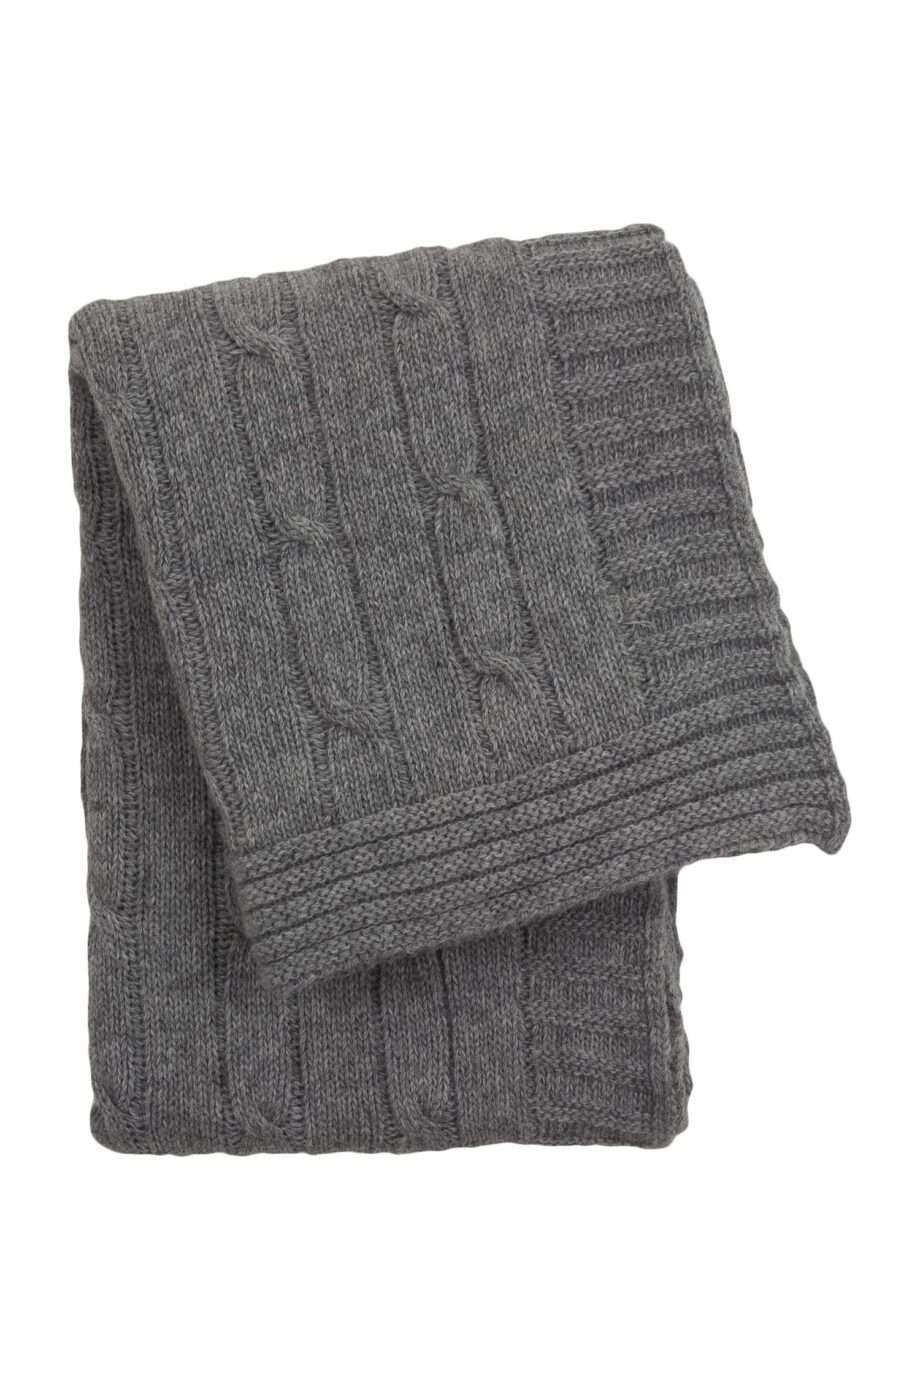 twist grey knitted woolen little blanket small